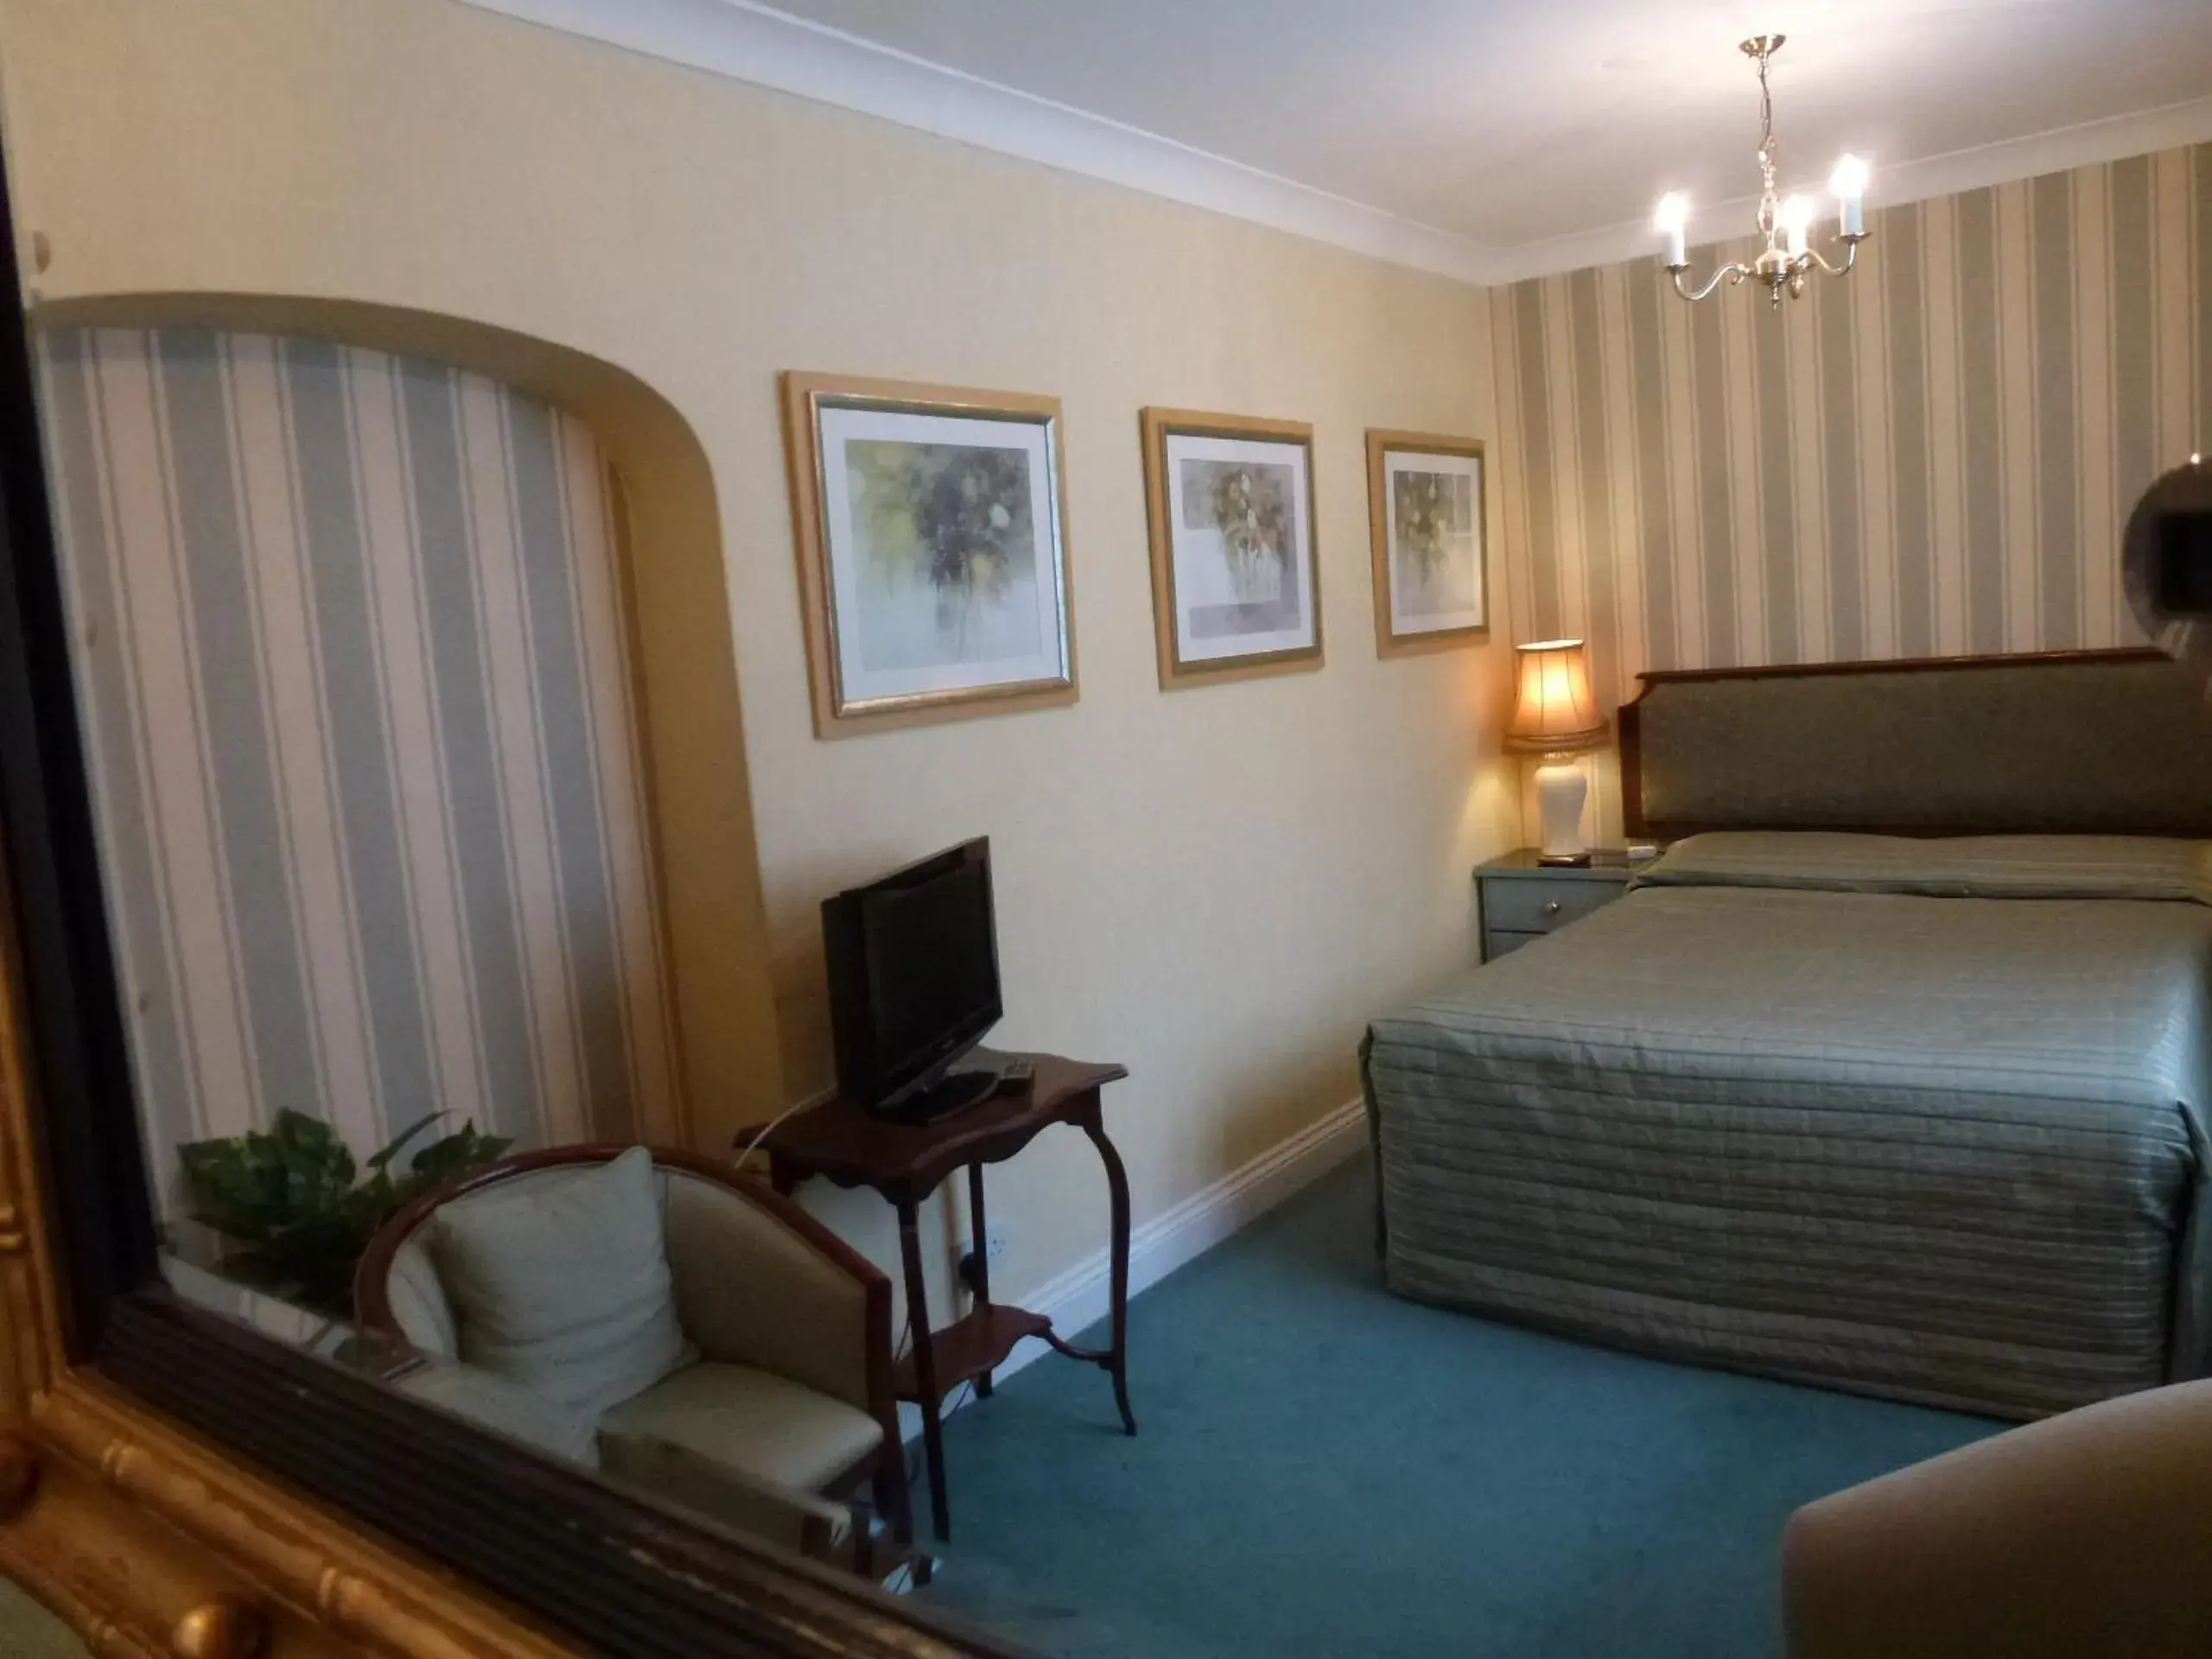 Bedroom in Beech House Hotel